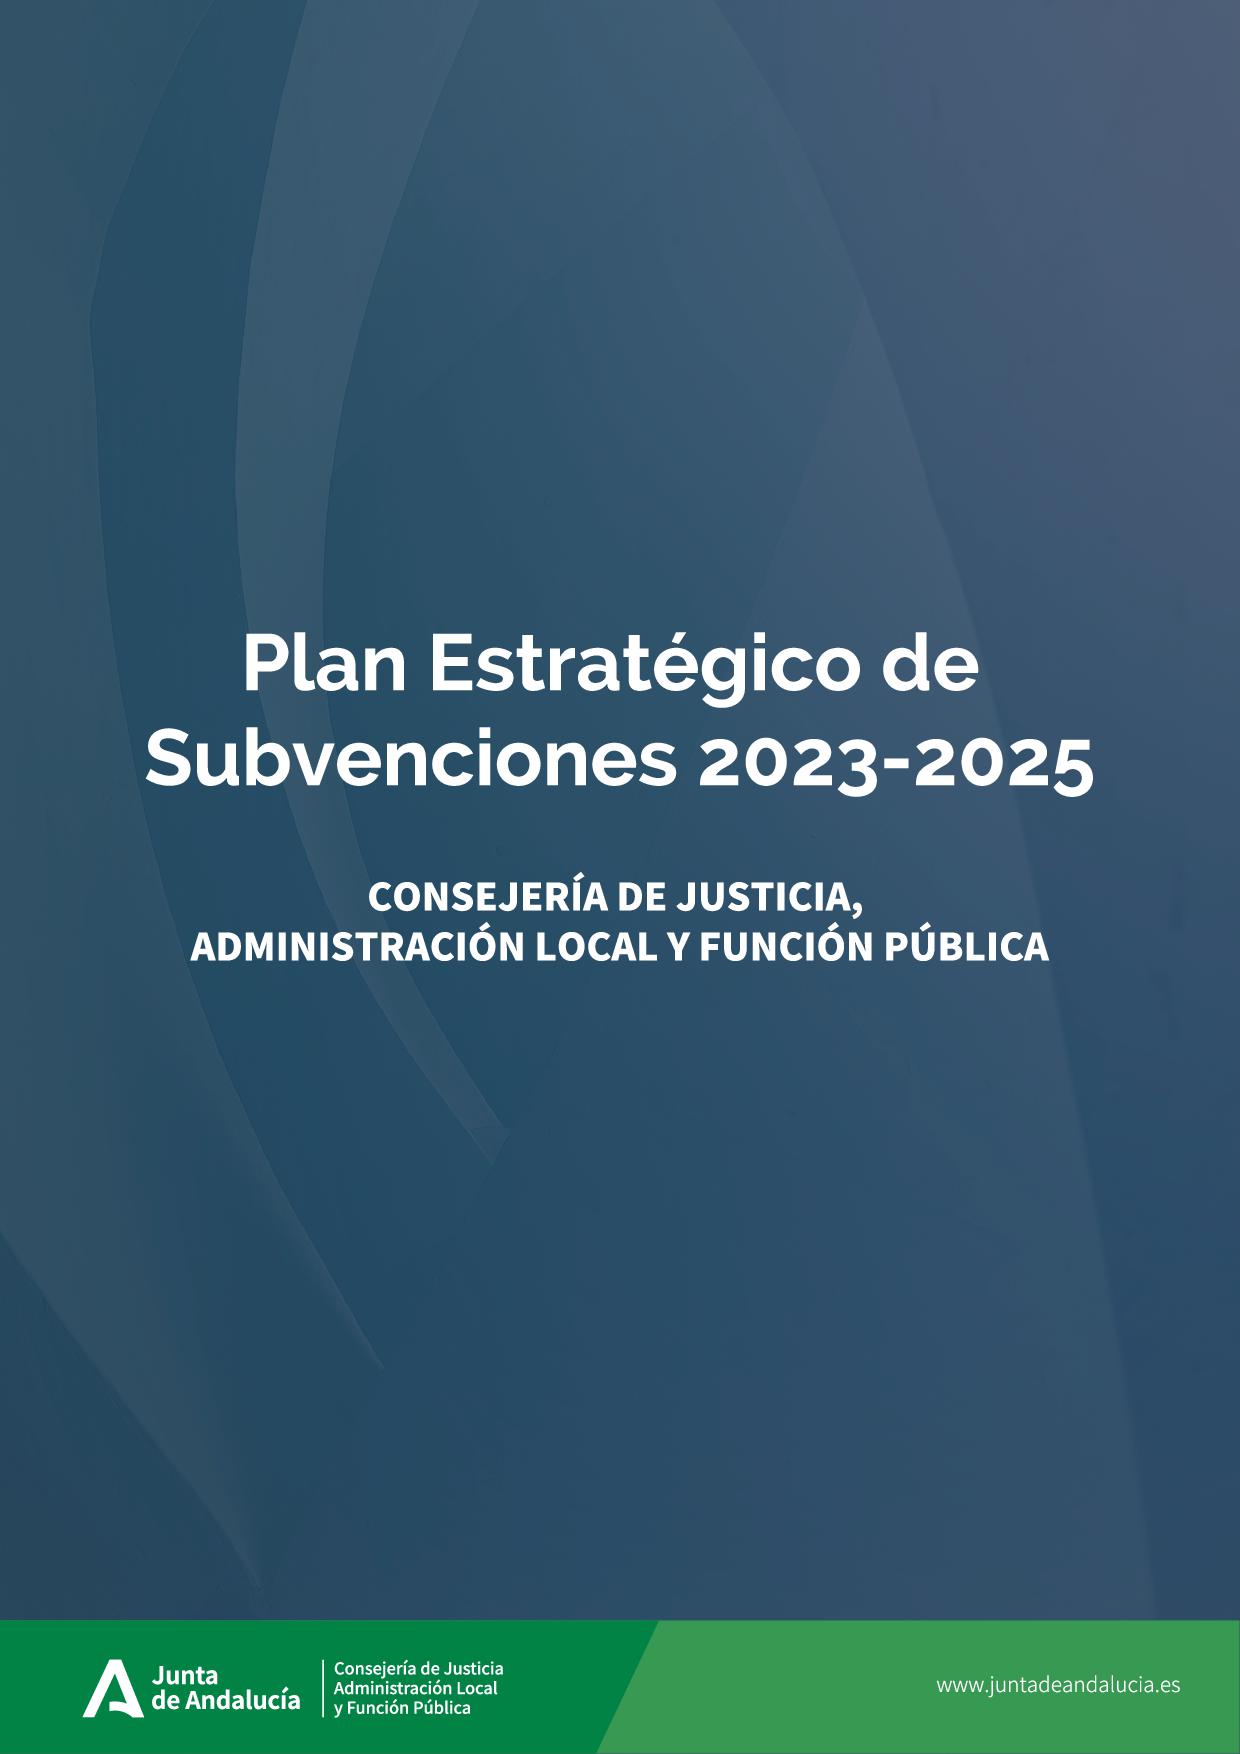 CJALFP-230623-Imagen_Plan_Estrategico_Subvenciones_23-25.jpg